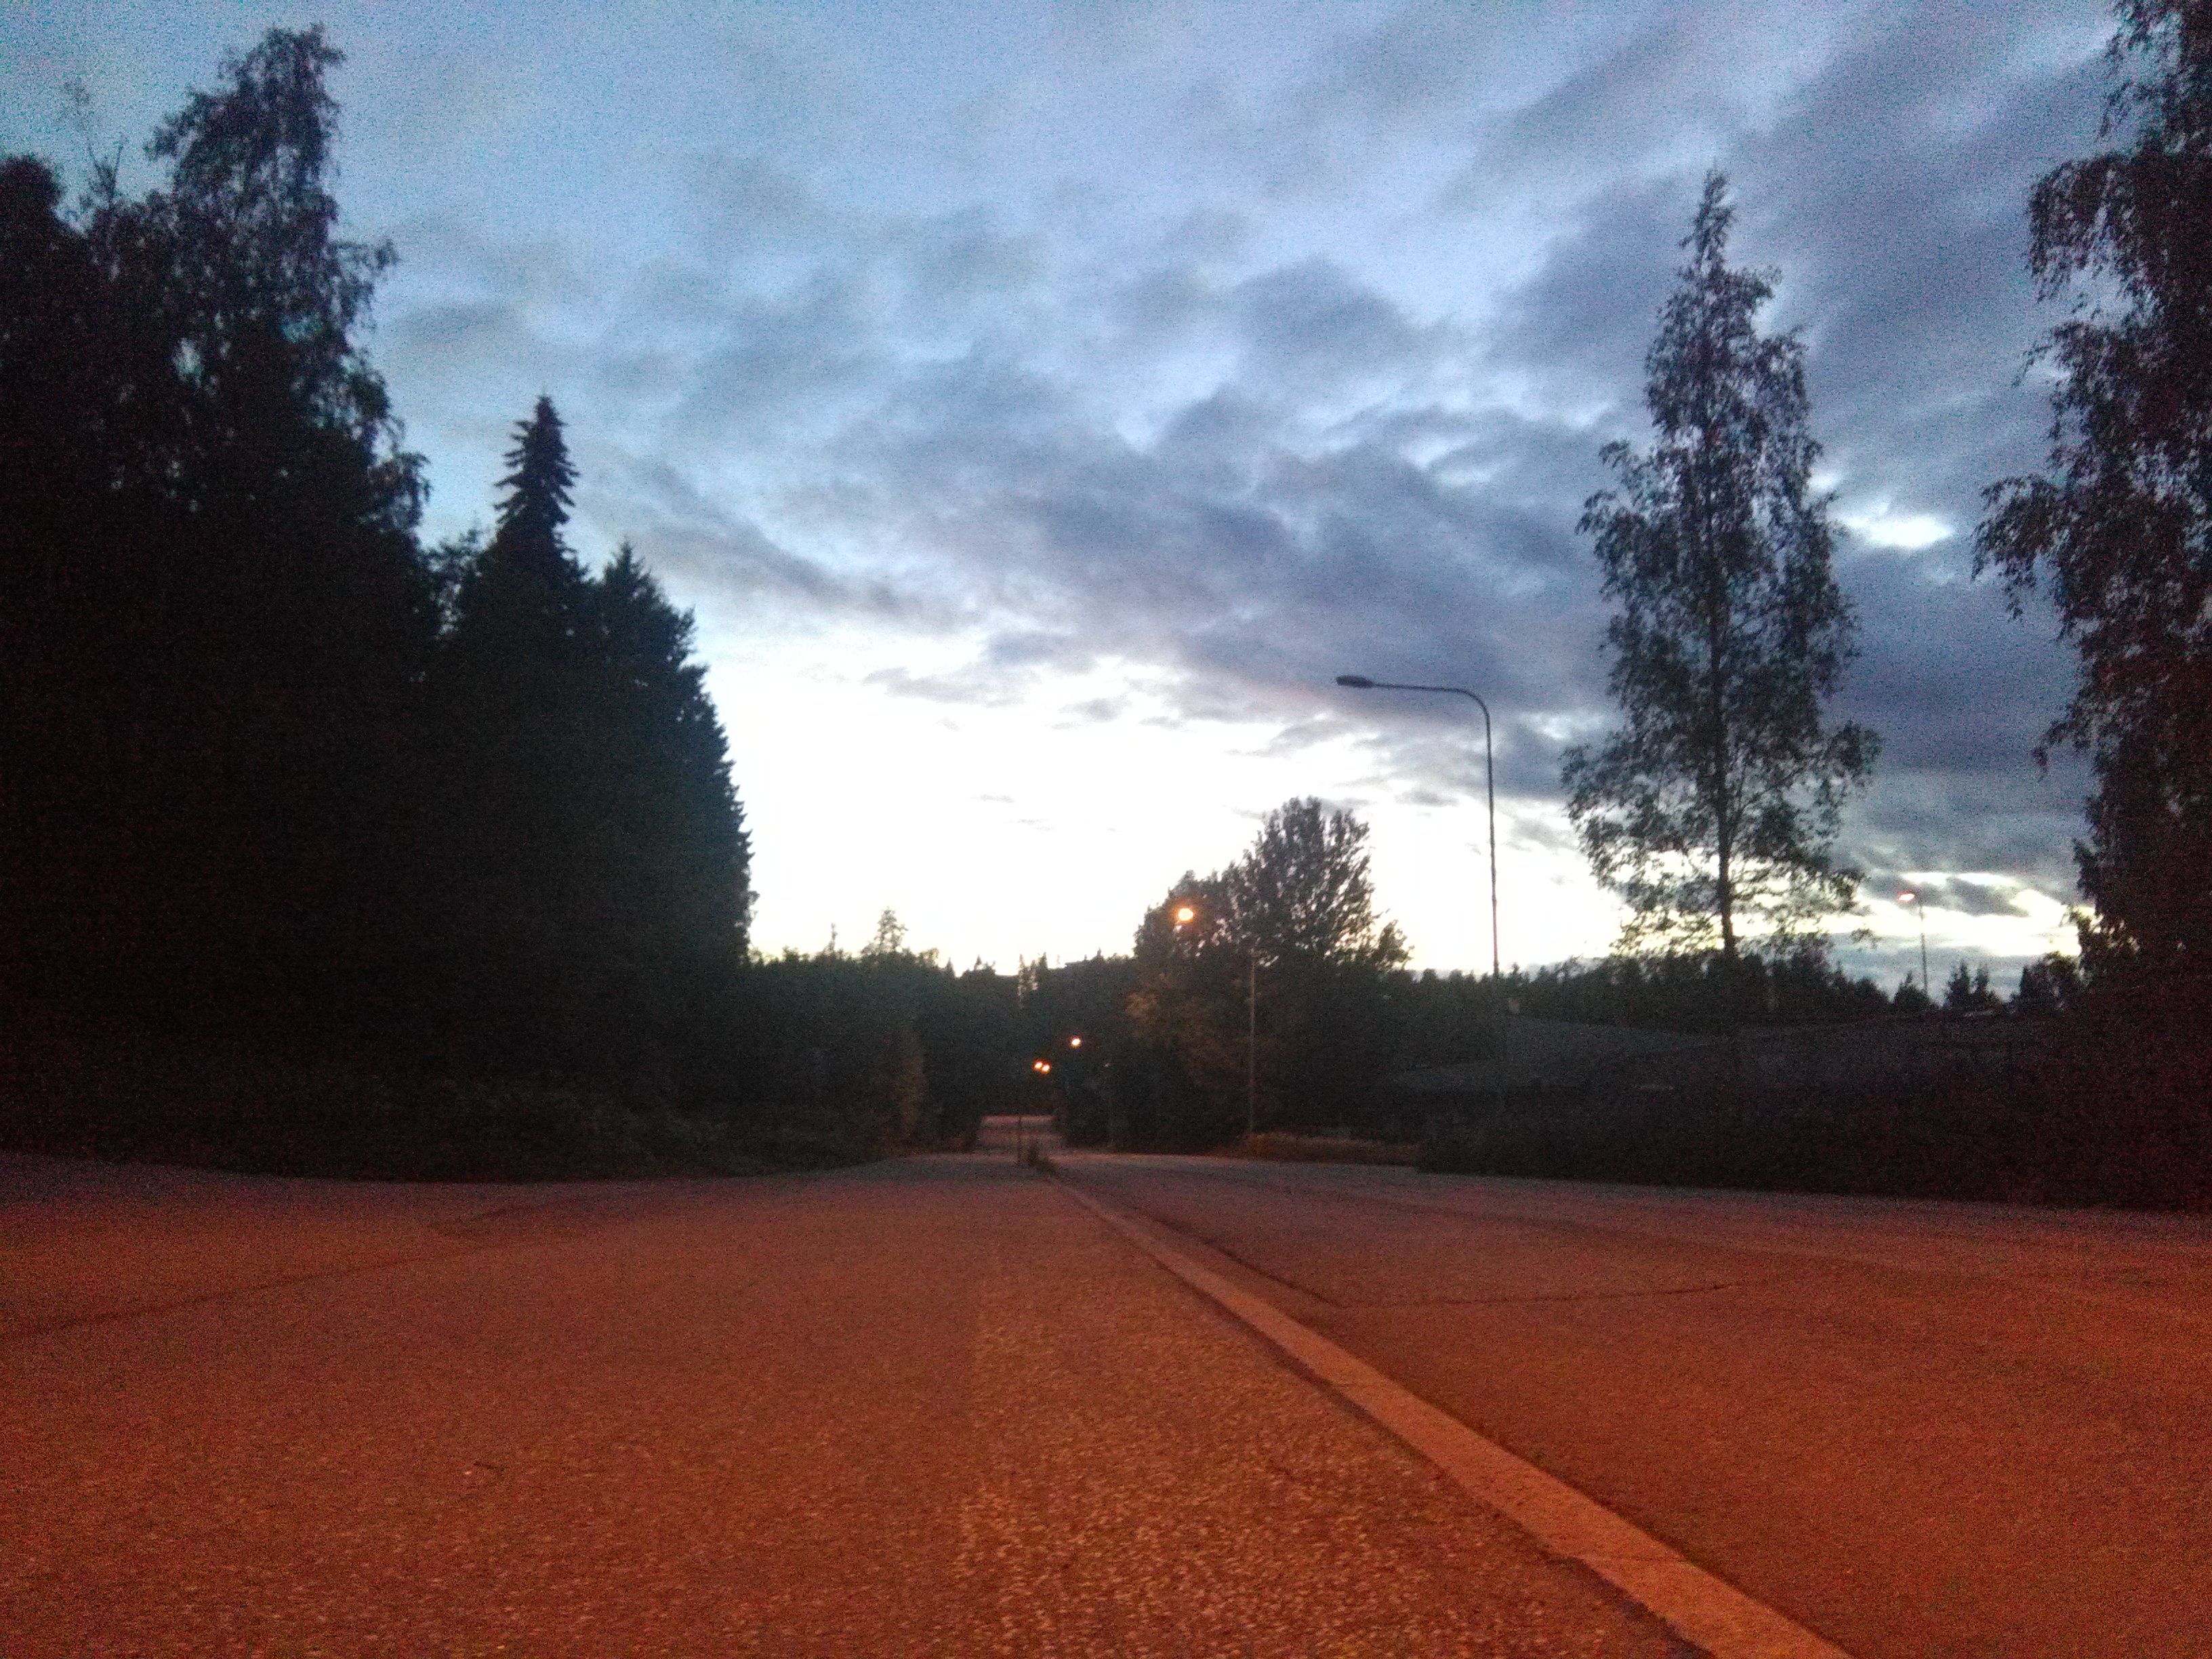 Night walk